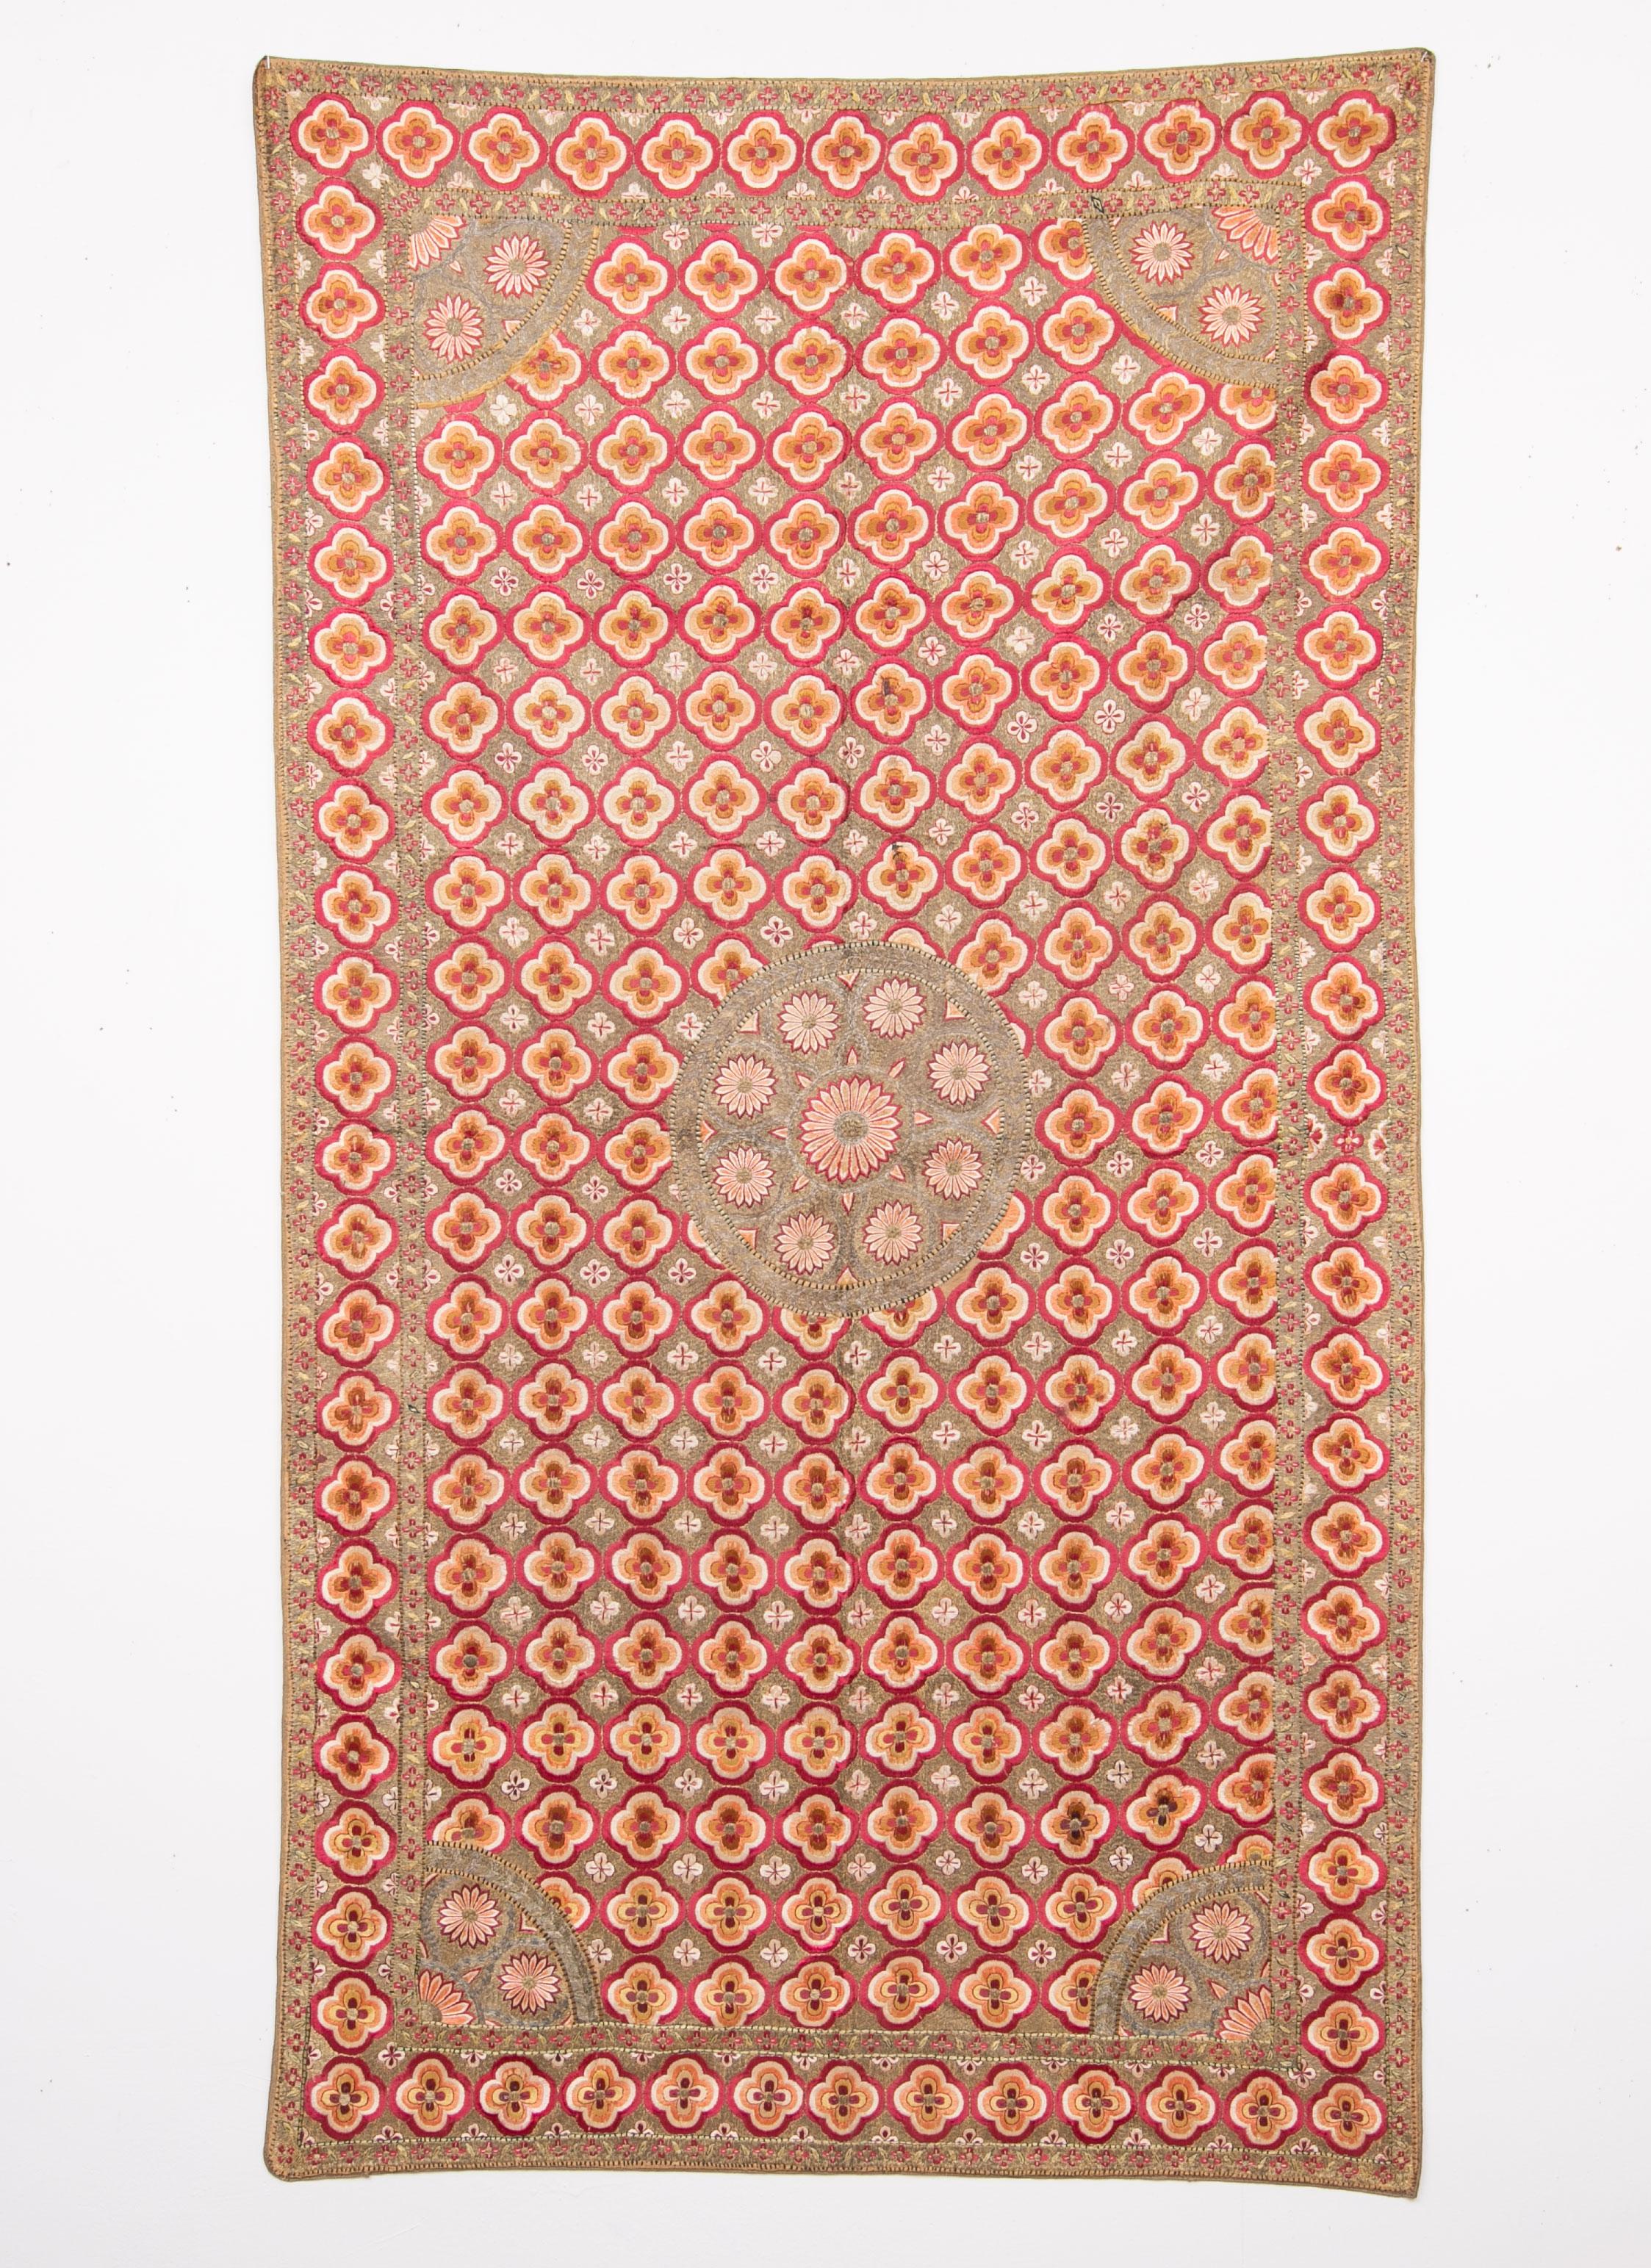 Cette broderie Deccan est brodée en soie et en fil métallique. Ils étaient principalement utilisés comme revêtements de sol pour les fêtes et les cérémonies. Il est en assez bon état pour son âge. Un objet de collection.